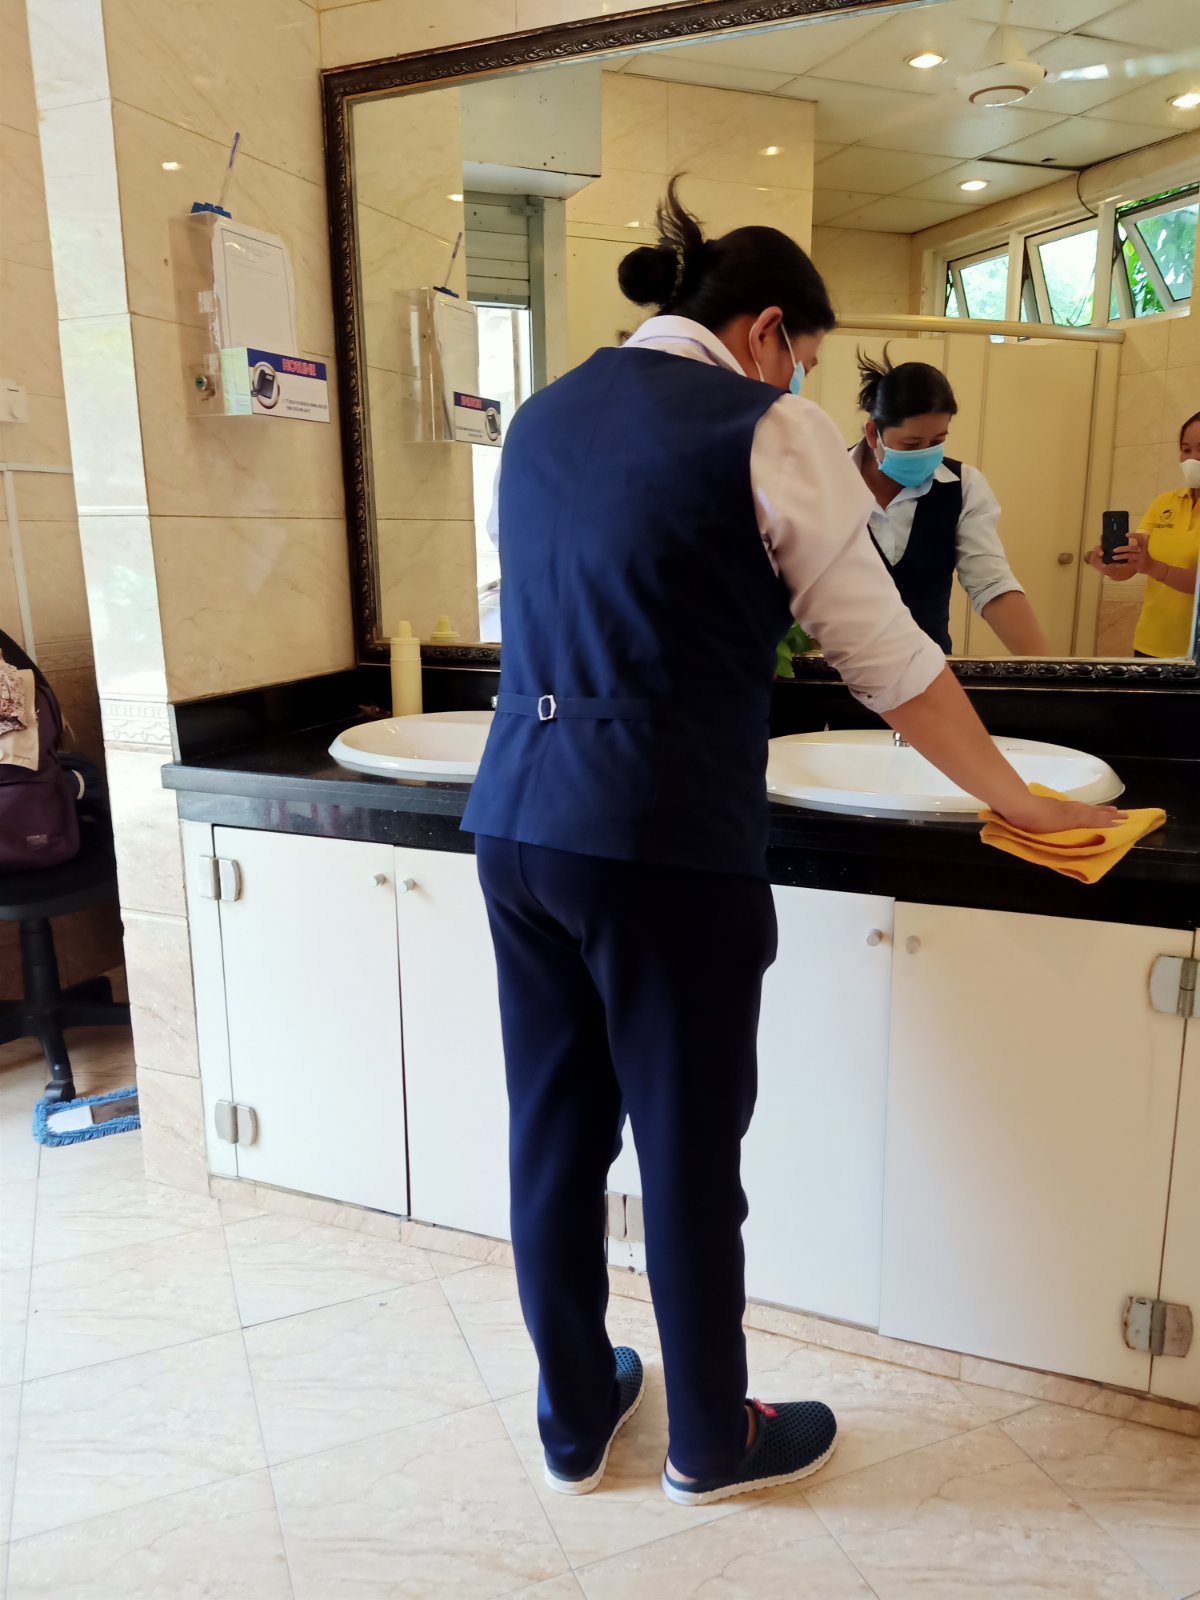 Dịch vụ vệ sinh làm sạch tại Kios ATM Sacombank